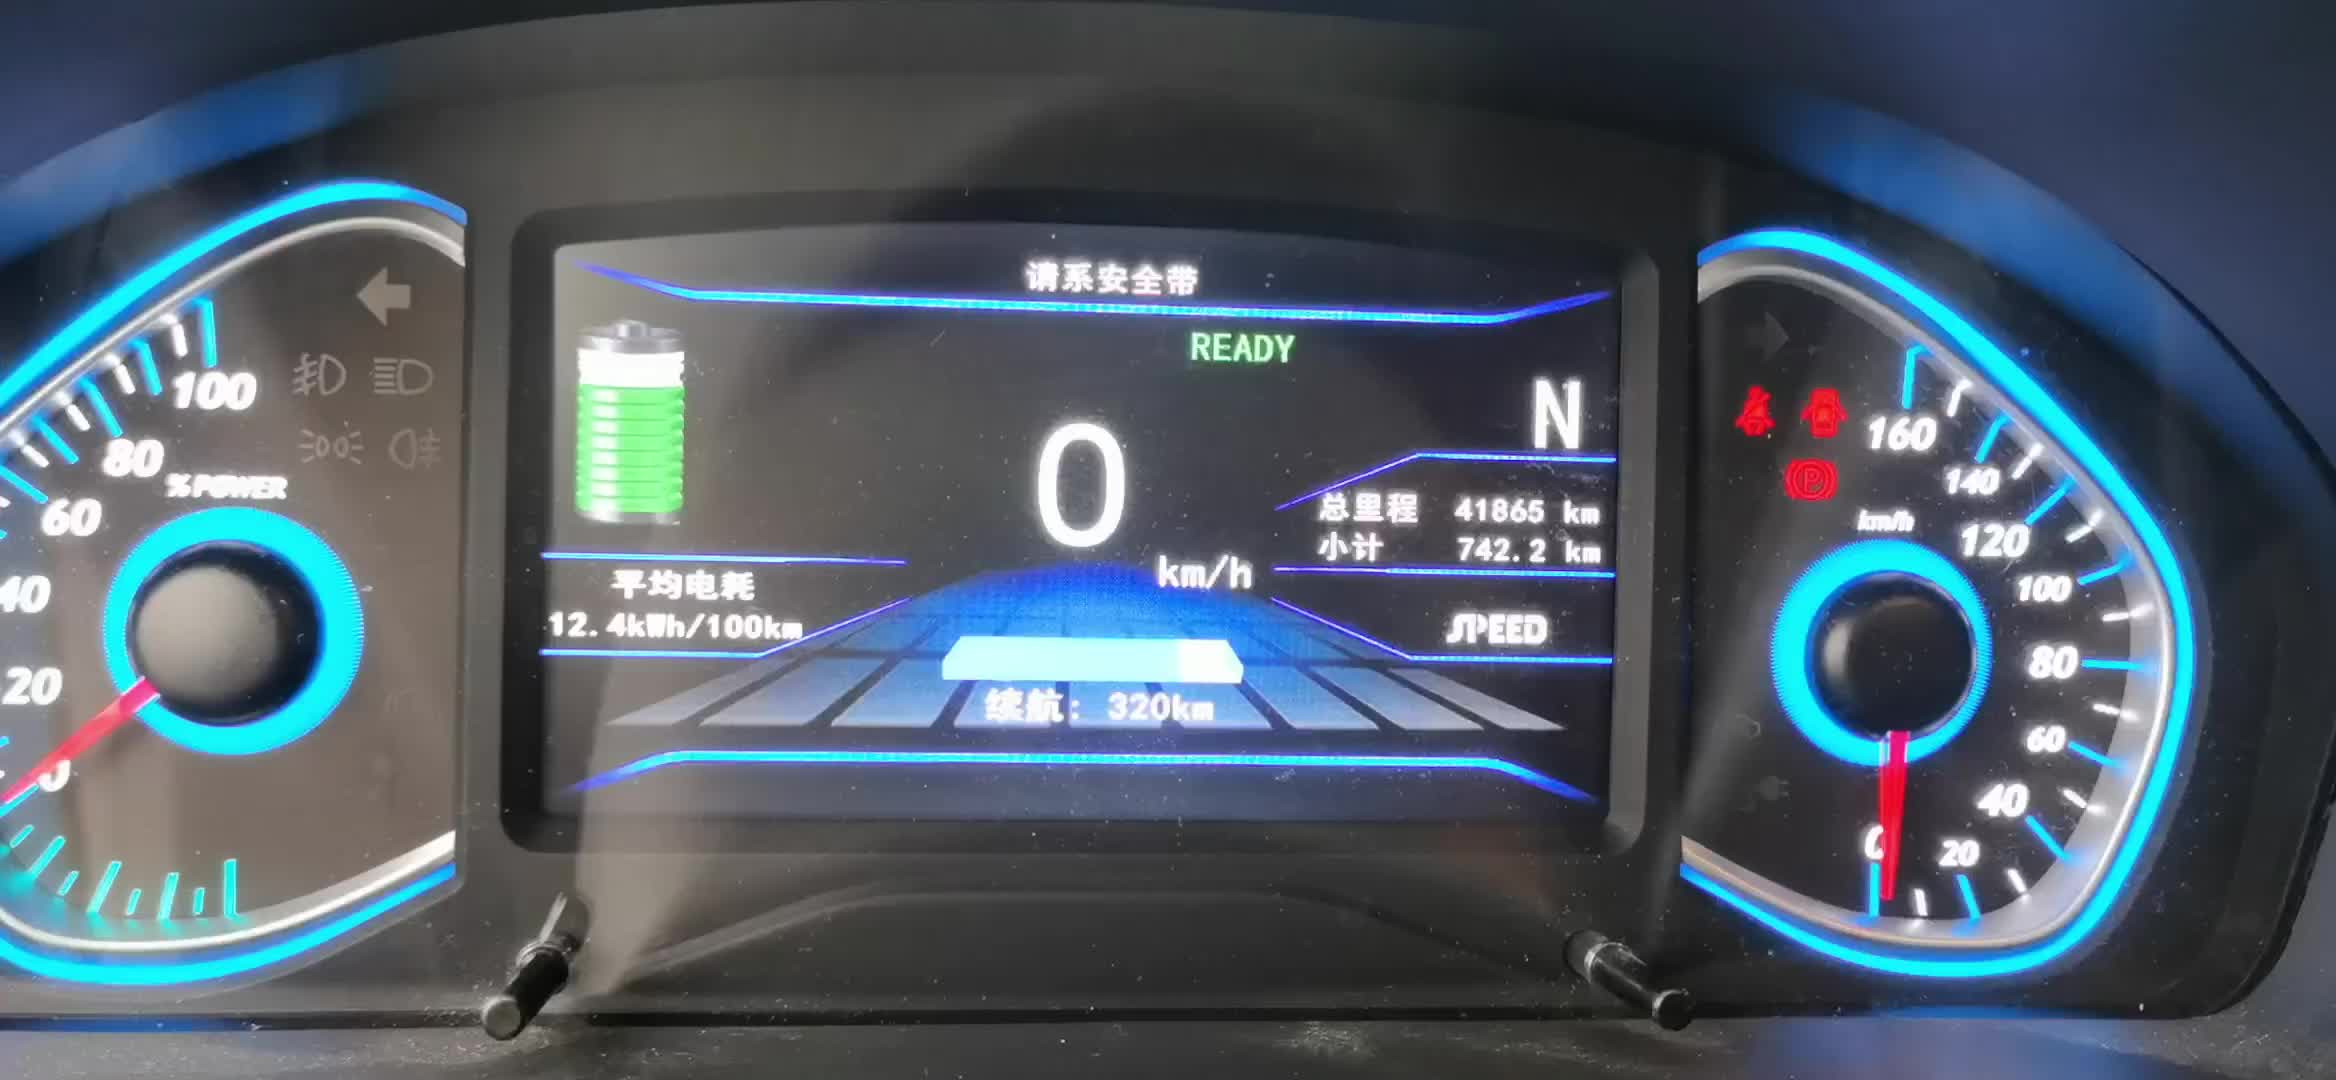 -城市：北京
-温度：20度 
-车型型号：北汽EC5
-能耗表现：12.4kWh
开空调最小，动能回收最小。


